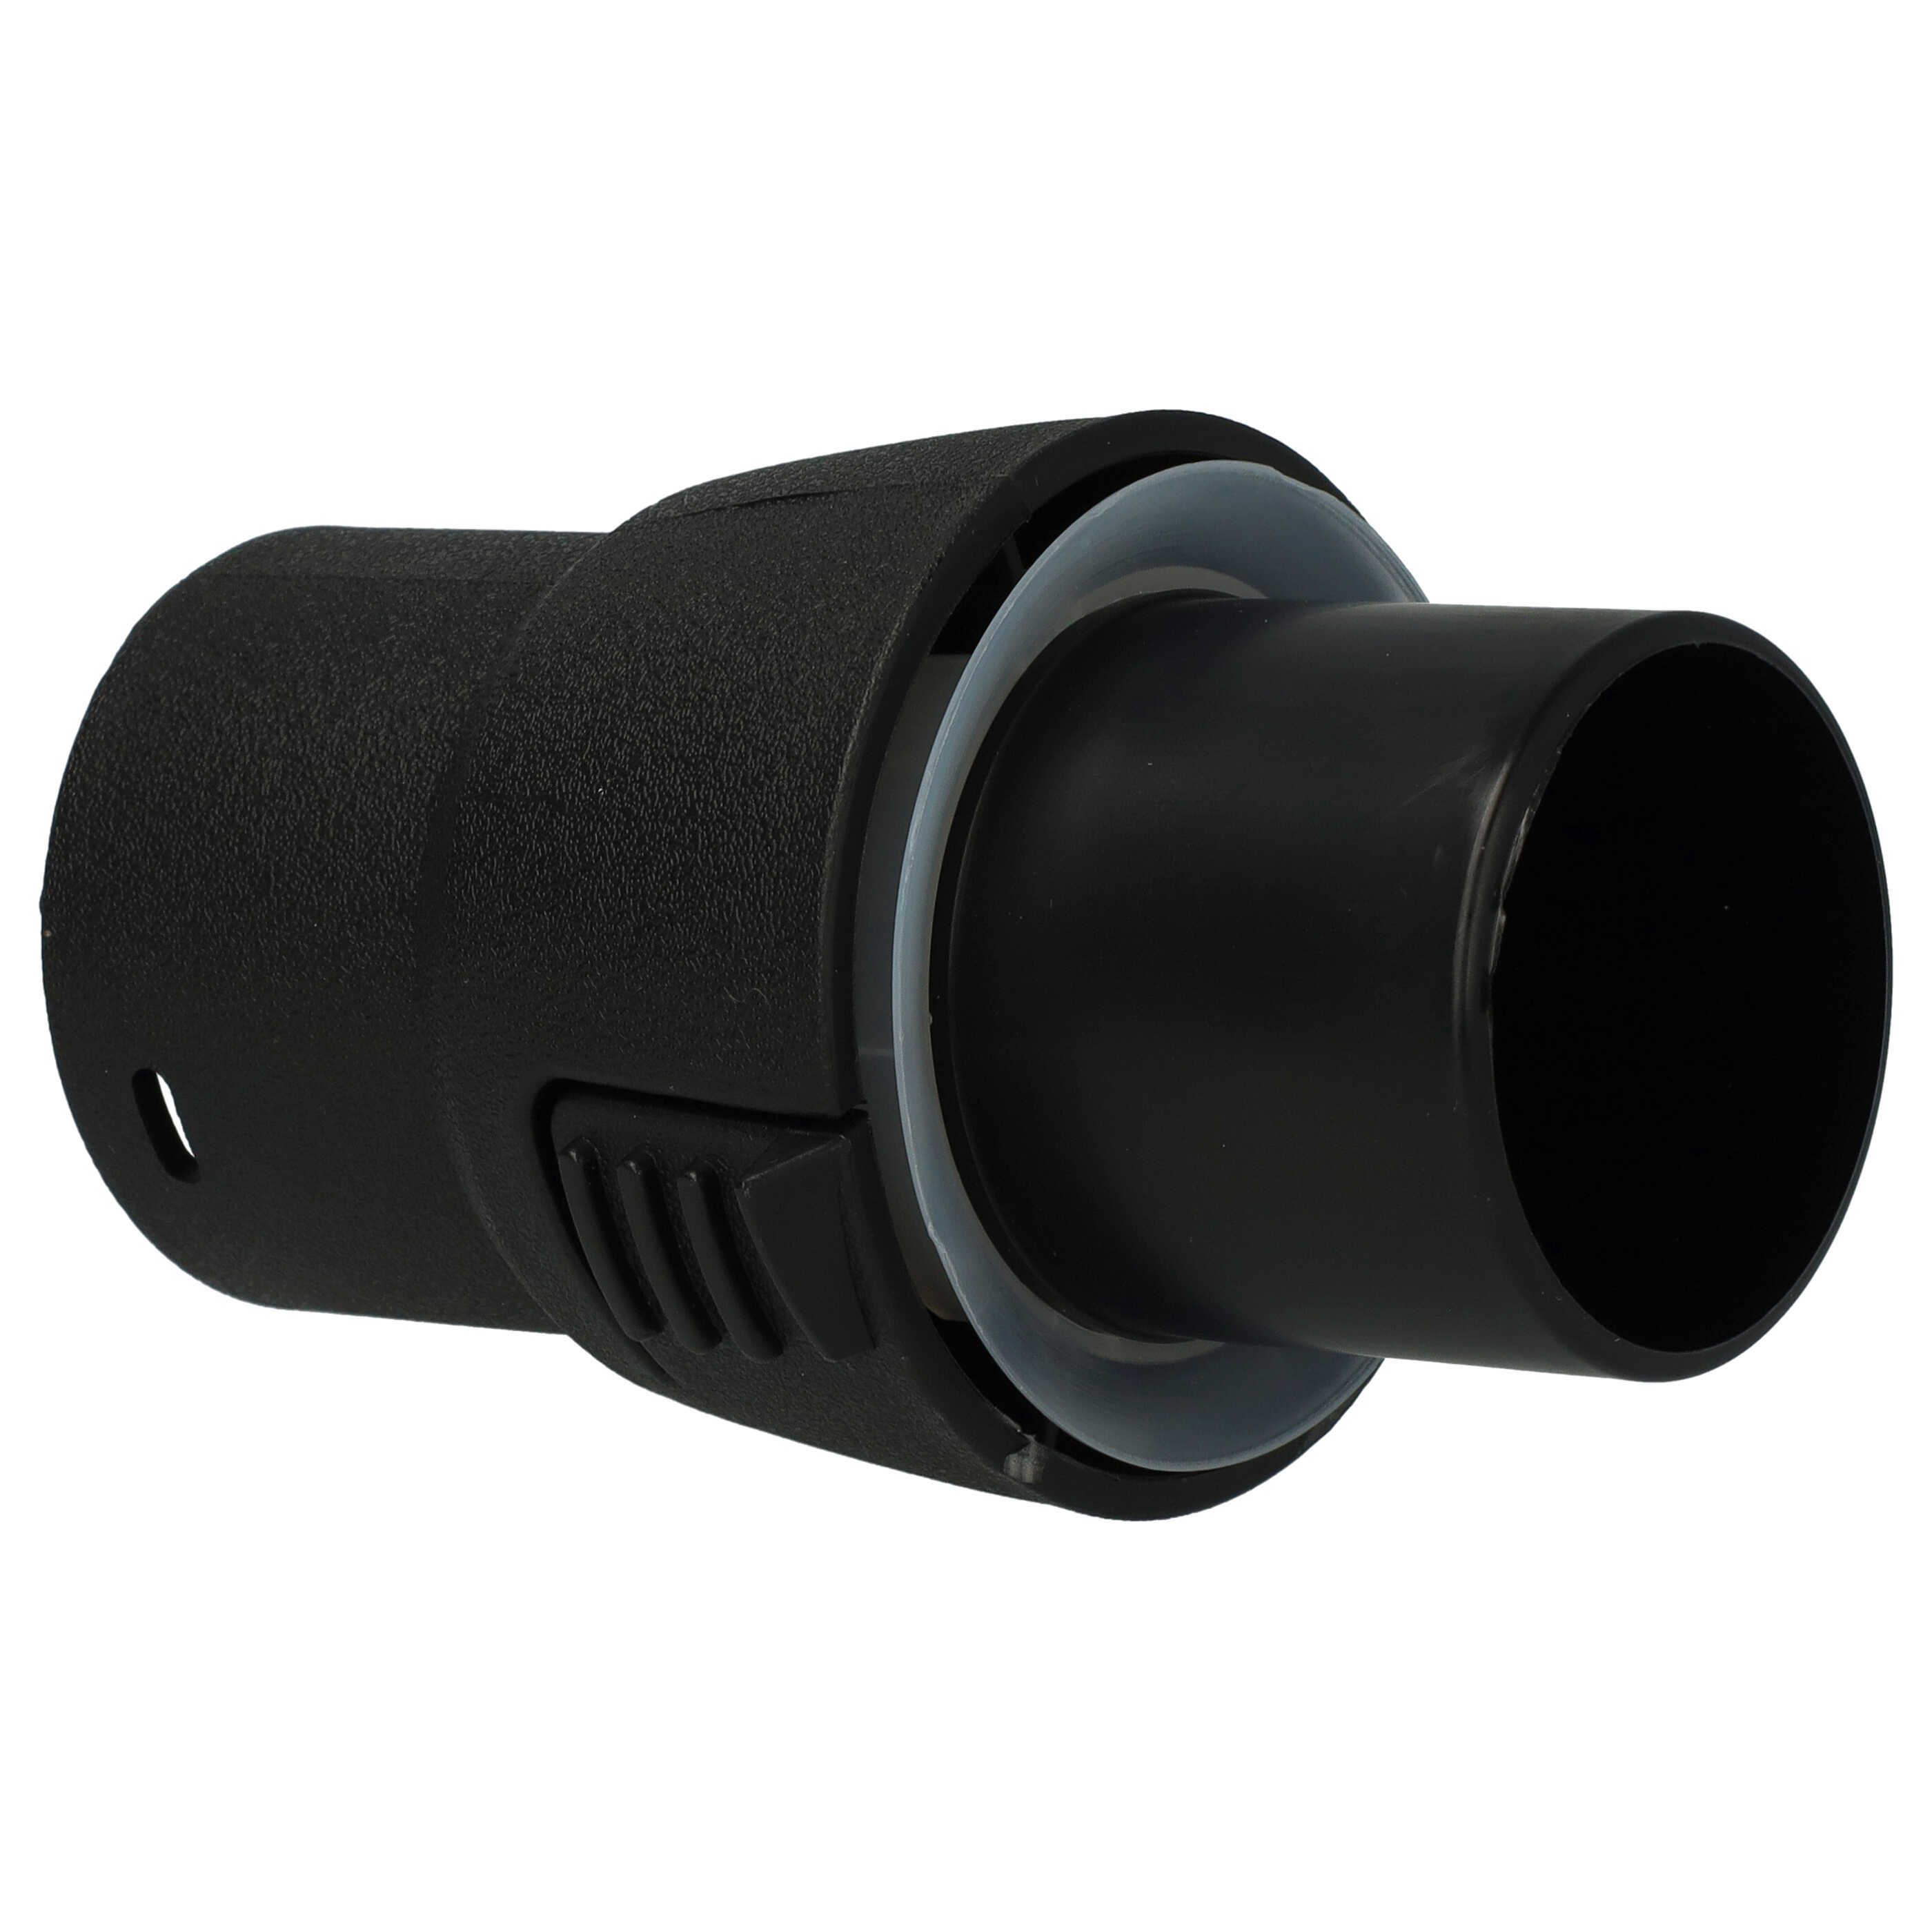 Adattatore per tubo flessibile per W6035 Wertheim aspiratori ecc - sistema a clic